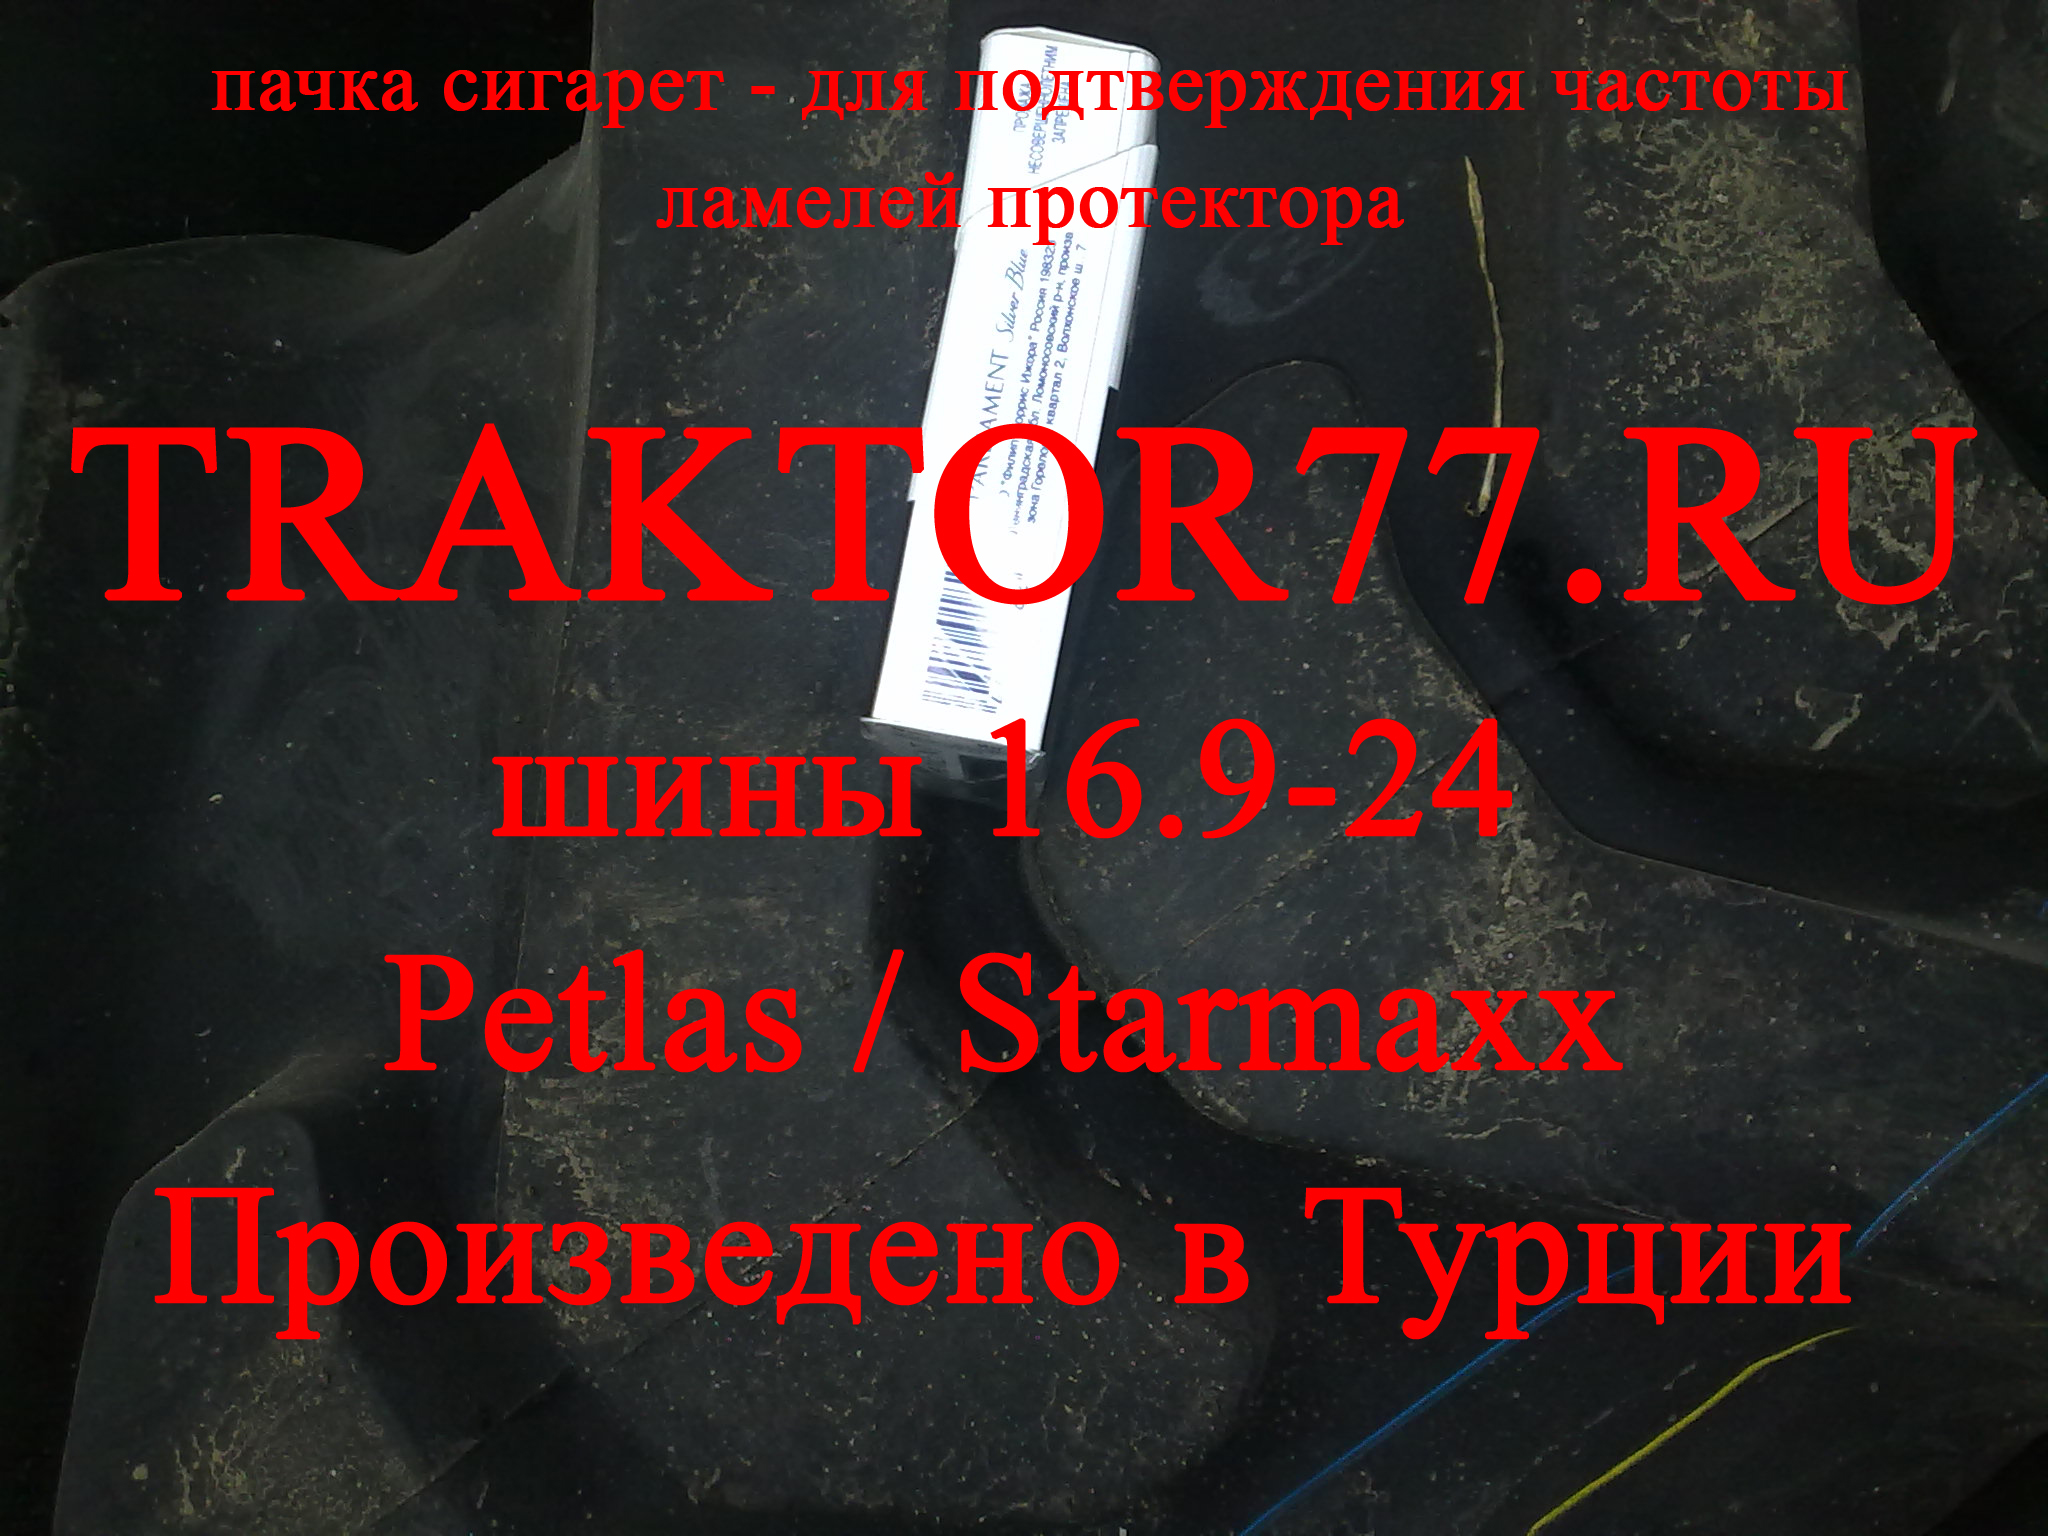 Шины Starmaxx 16.9-24 для экскаваторов-погрузчиков с обратной лопатой